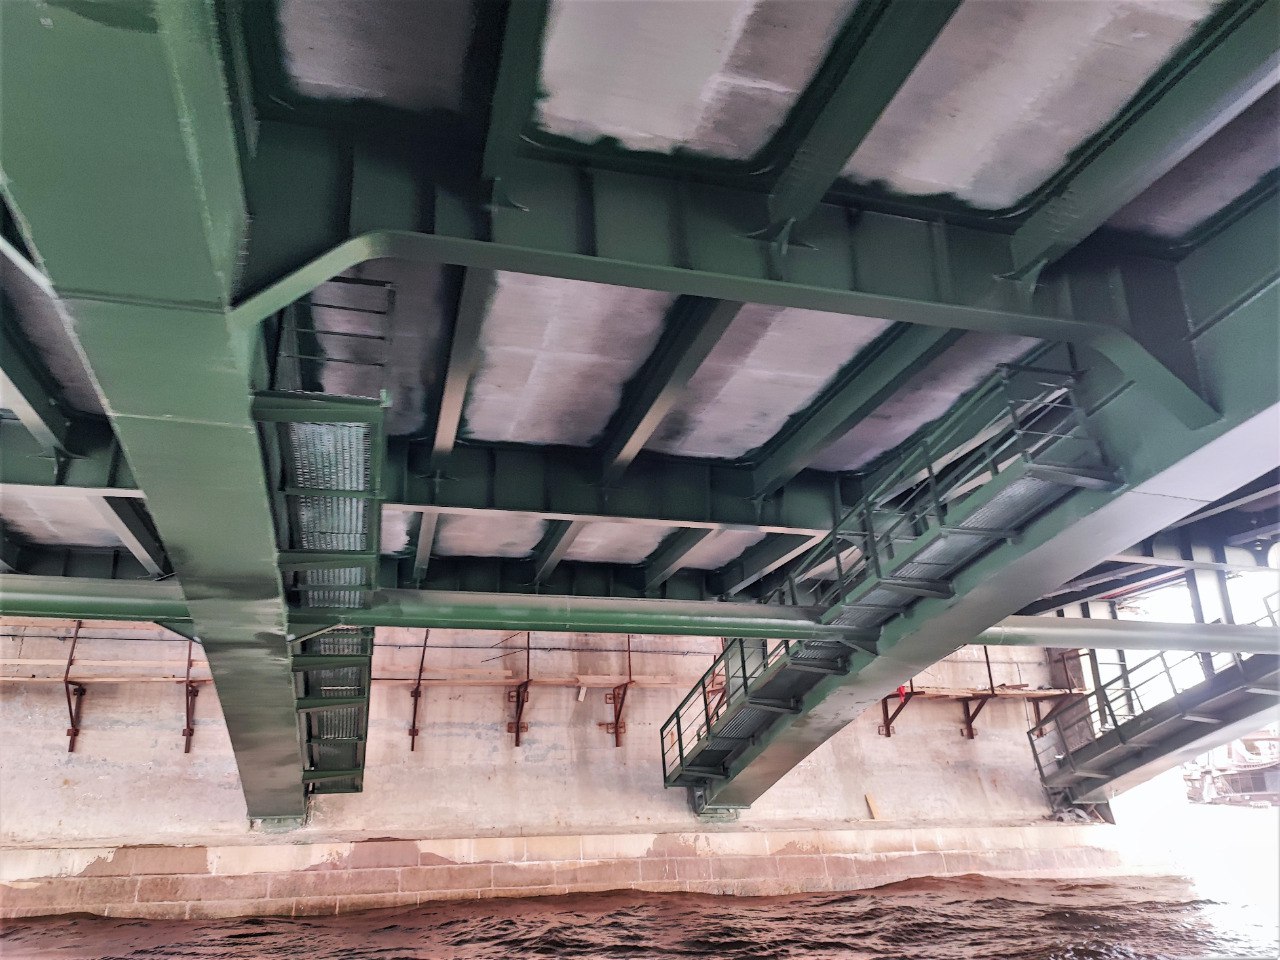 На Биржевом мосту завершен весь спектр строительно-монтажных работ. Отремонтированы стационарные и разводное пролетные строен...